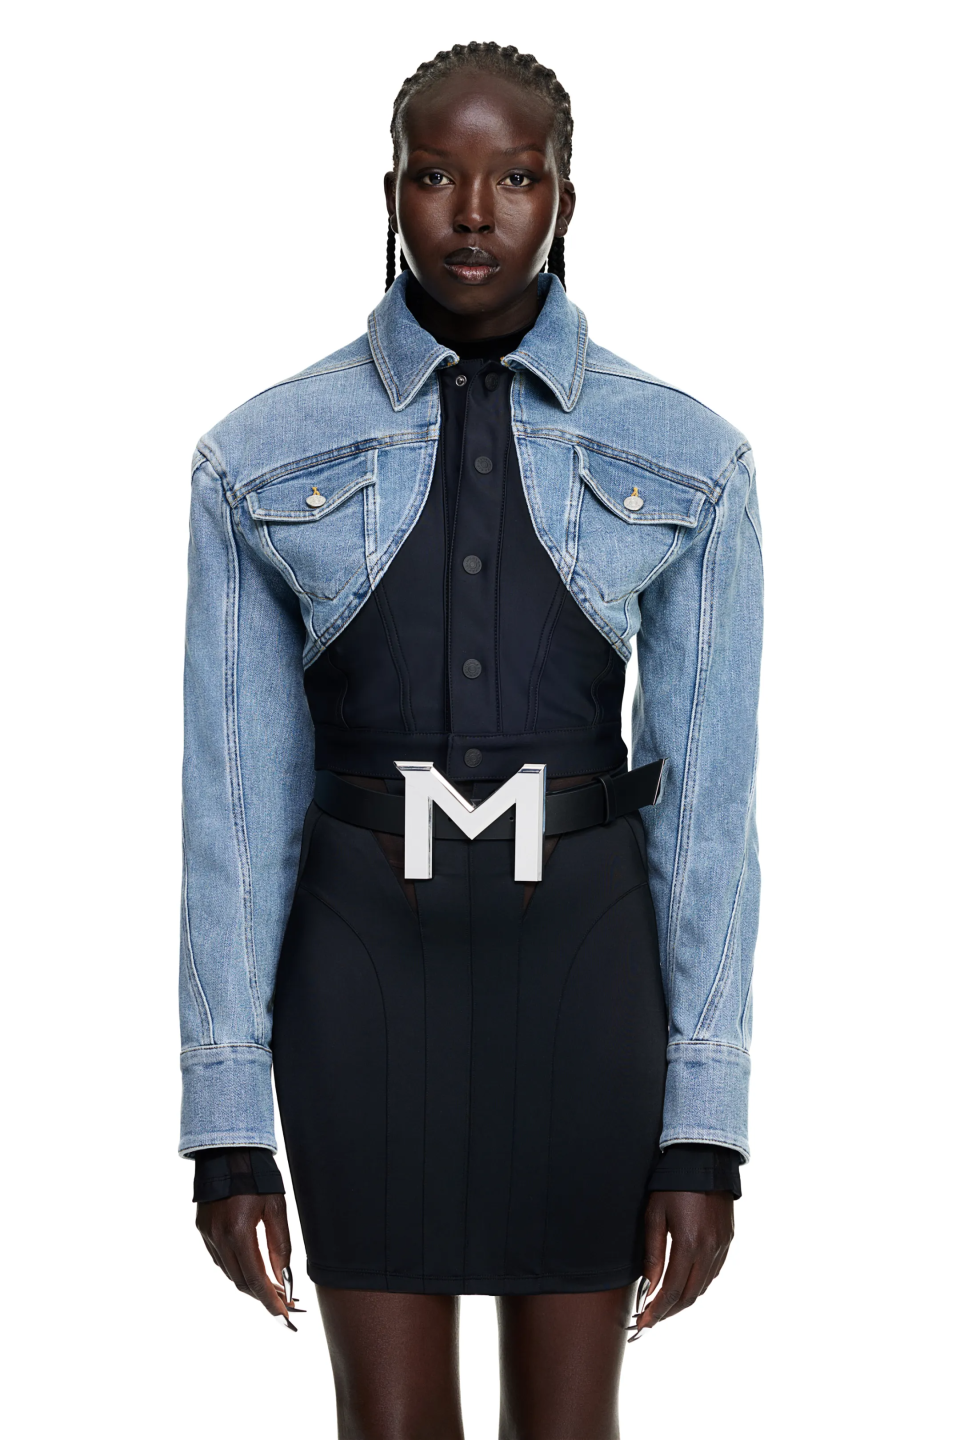 Mugler x H&M Defined-Waist Denim Crop Jacket